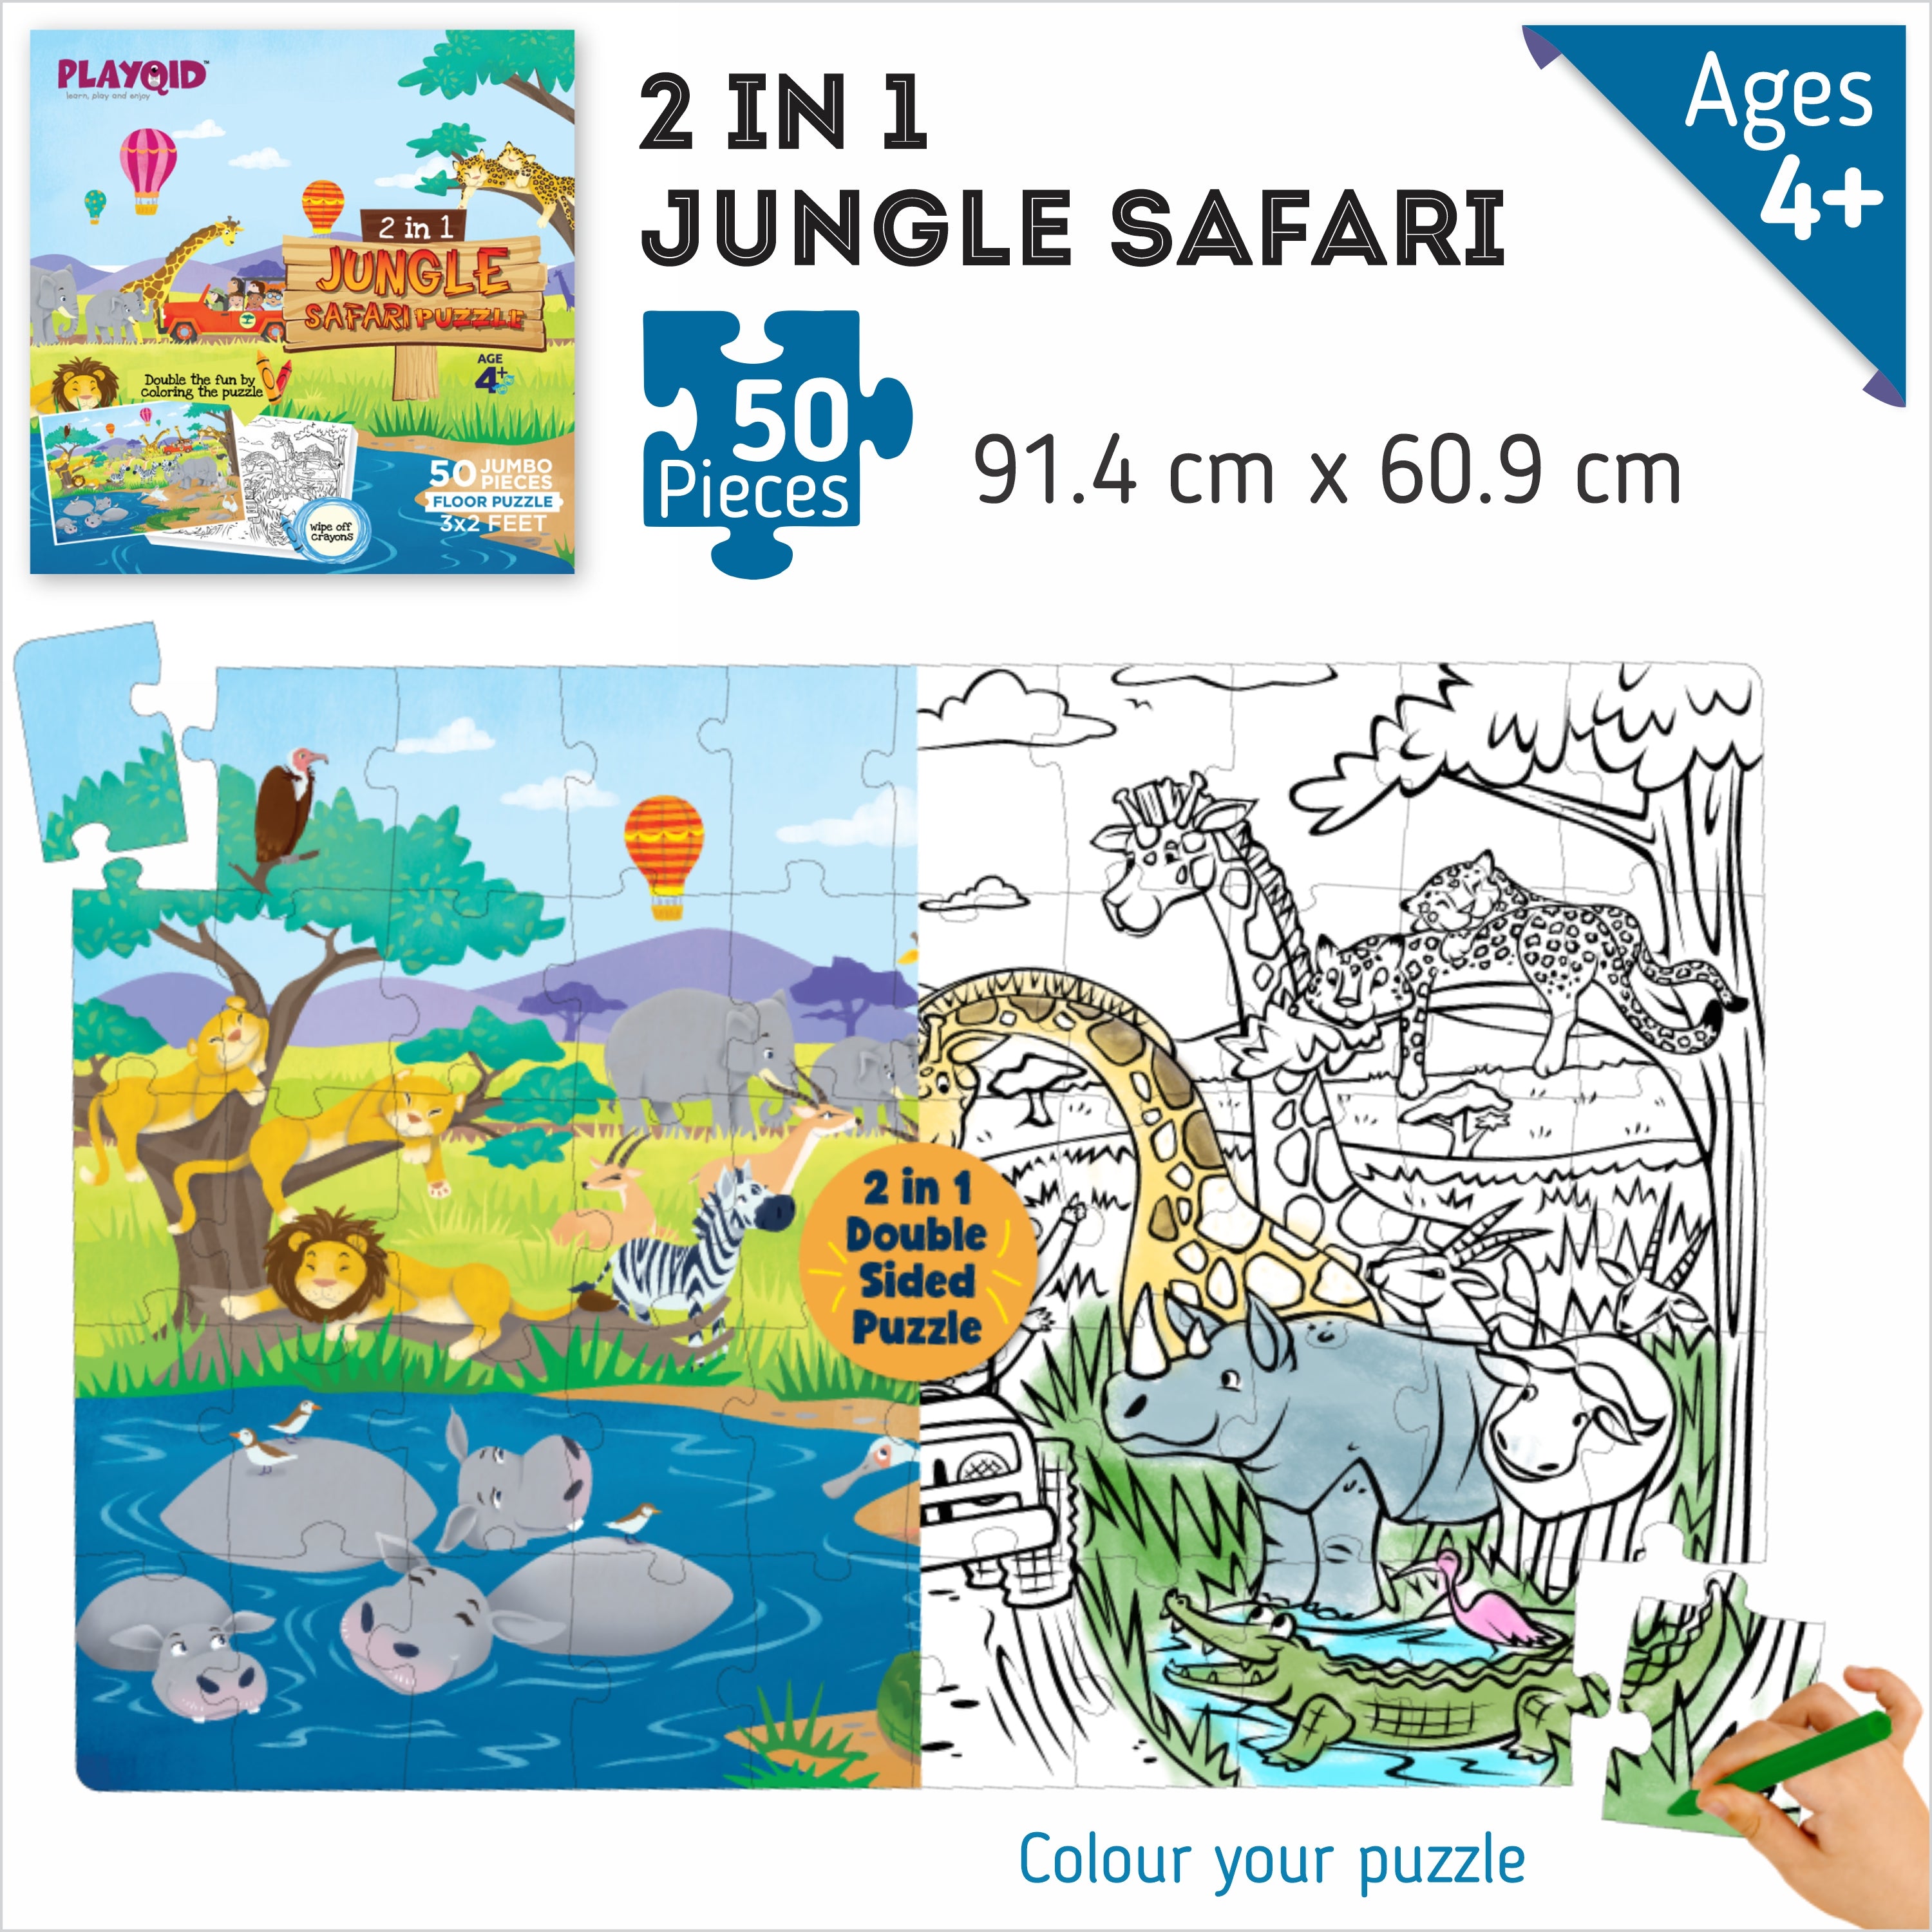 2 IN 1 - Jungle Safari - 50 Piece Puzzles